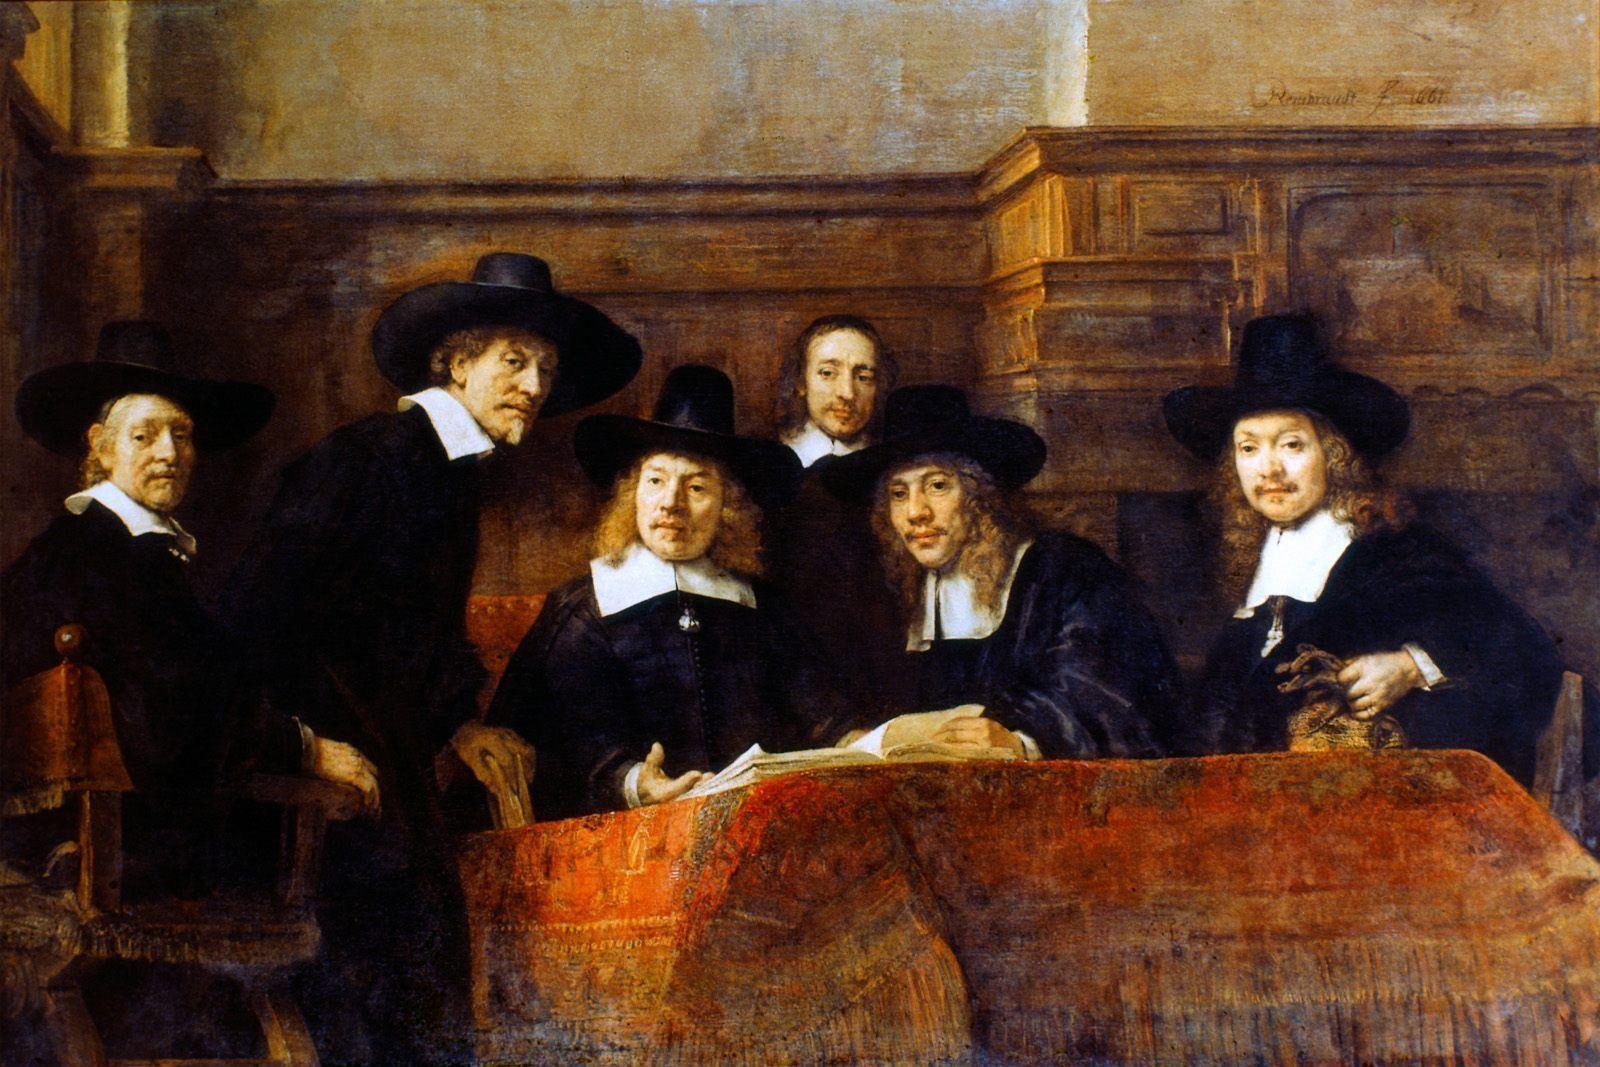 Art Wallpaper Hd: Rembrandt van Rijn Wallpaper